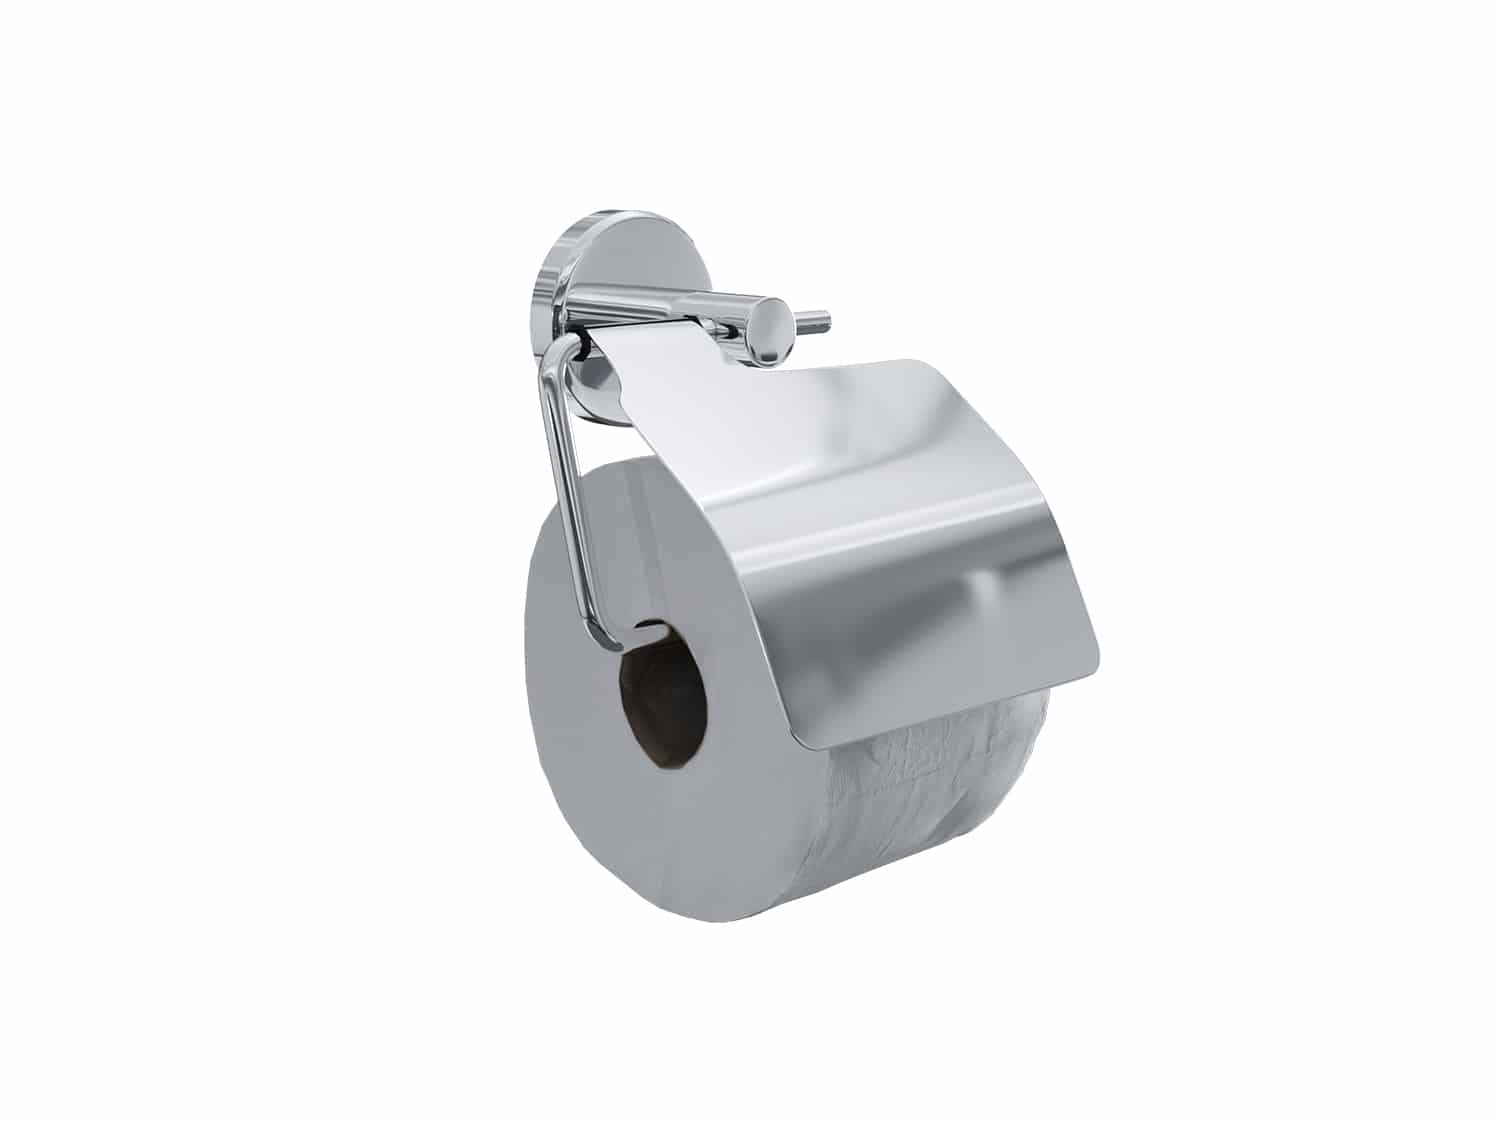 4bathroomz® Oslo Toiletrolhouder met Klep - WC rolhouder - Chroom